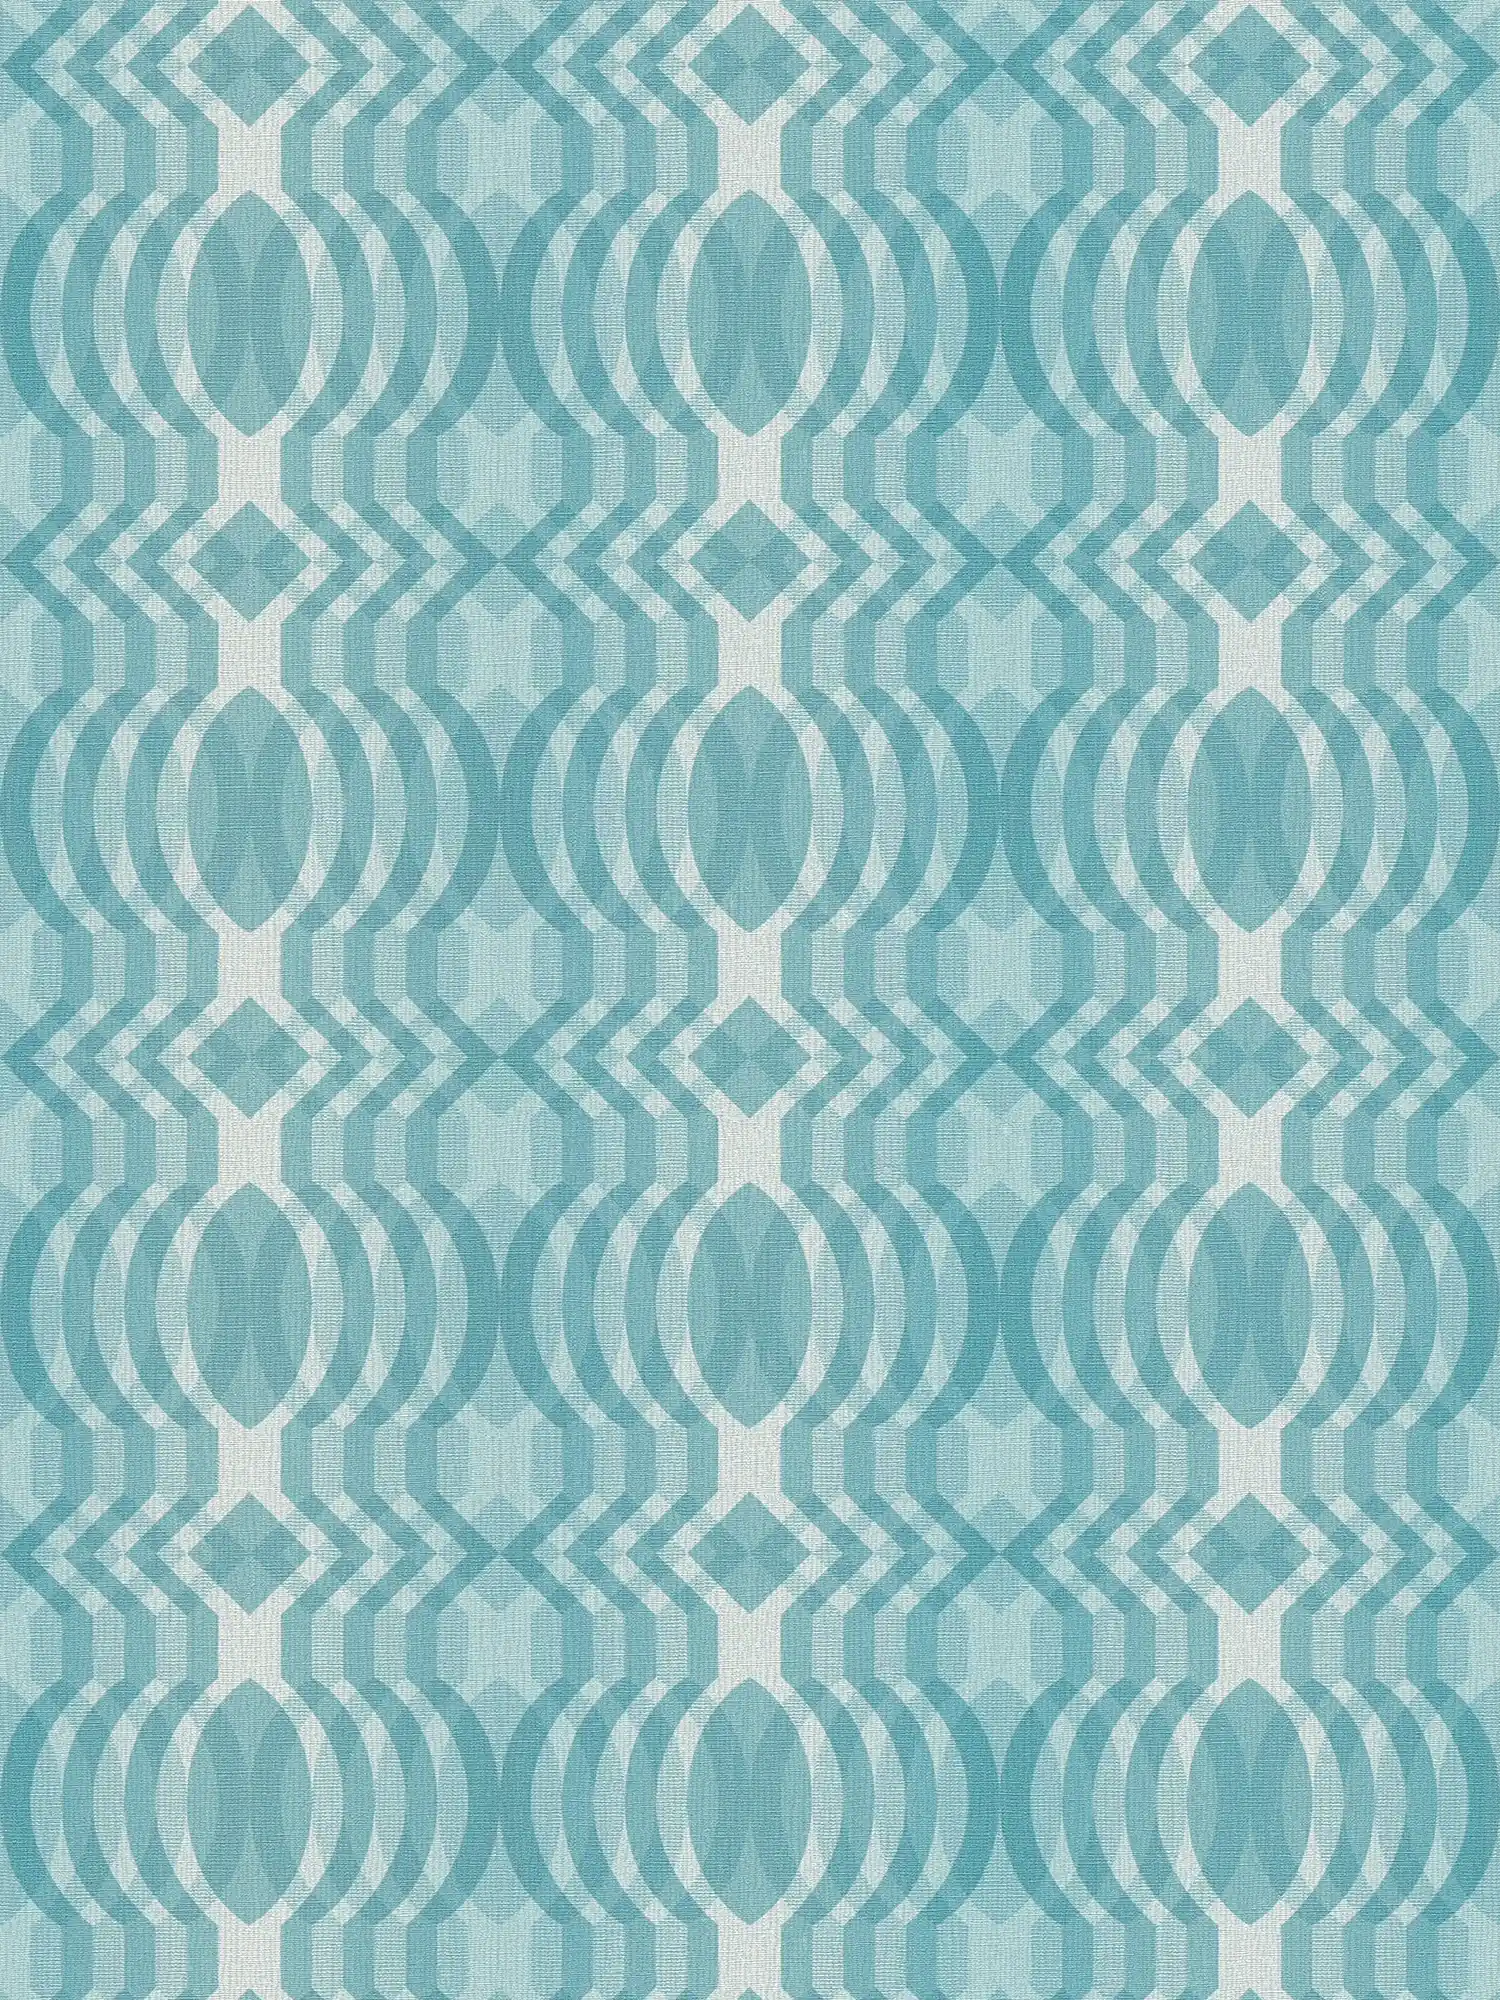 Retro Tapete mit geometrischem Muster – Blau, Creme, Weiß
